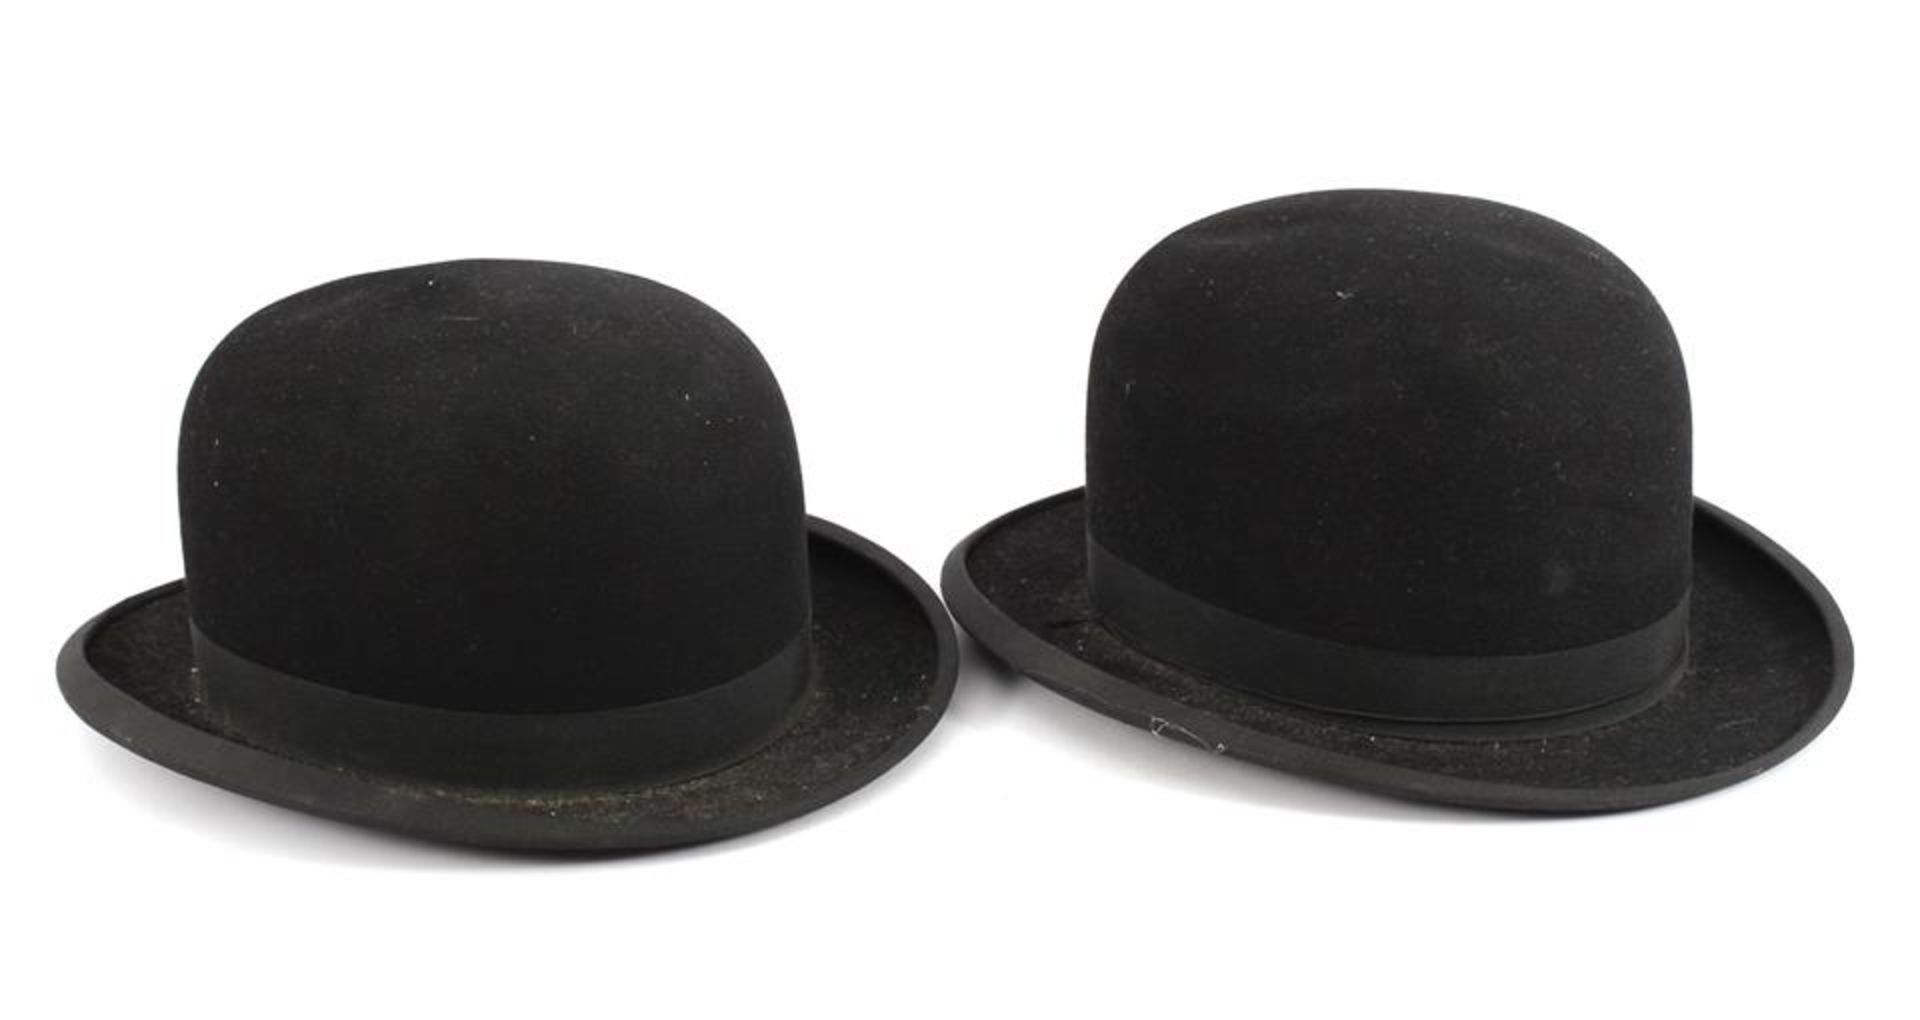 2 Old English bowler hats